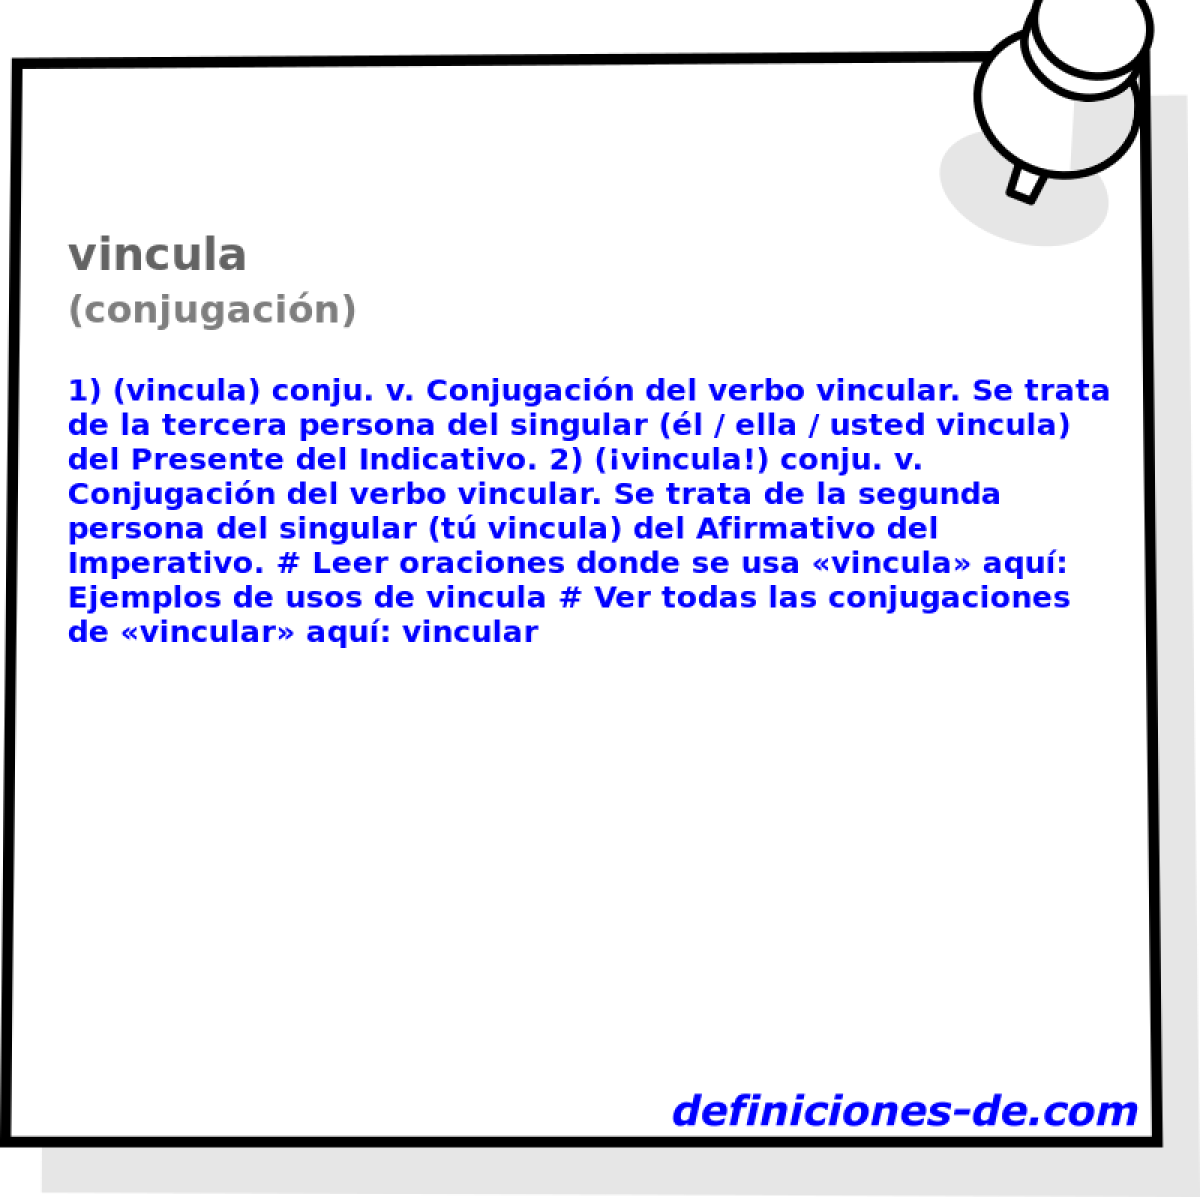 vincula (conjugacin)